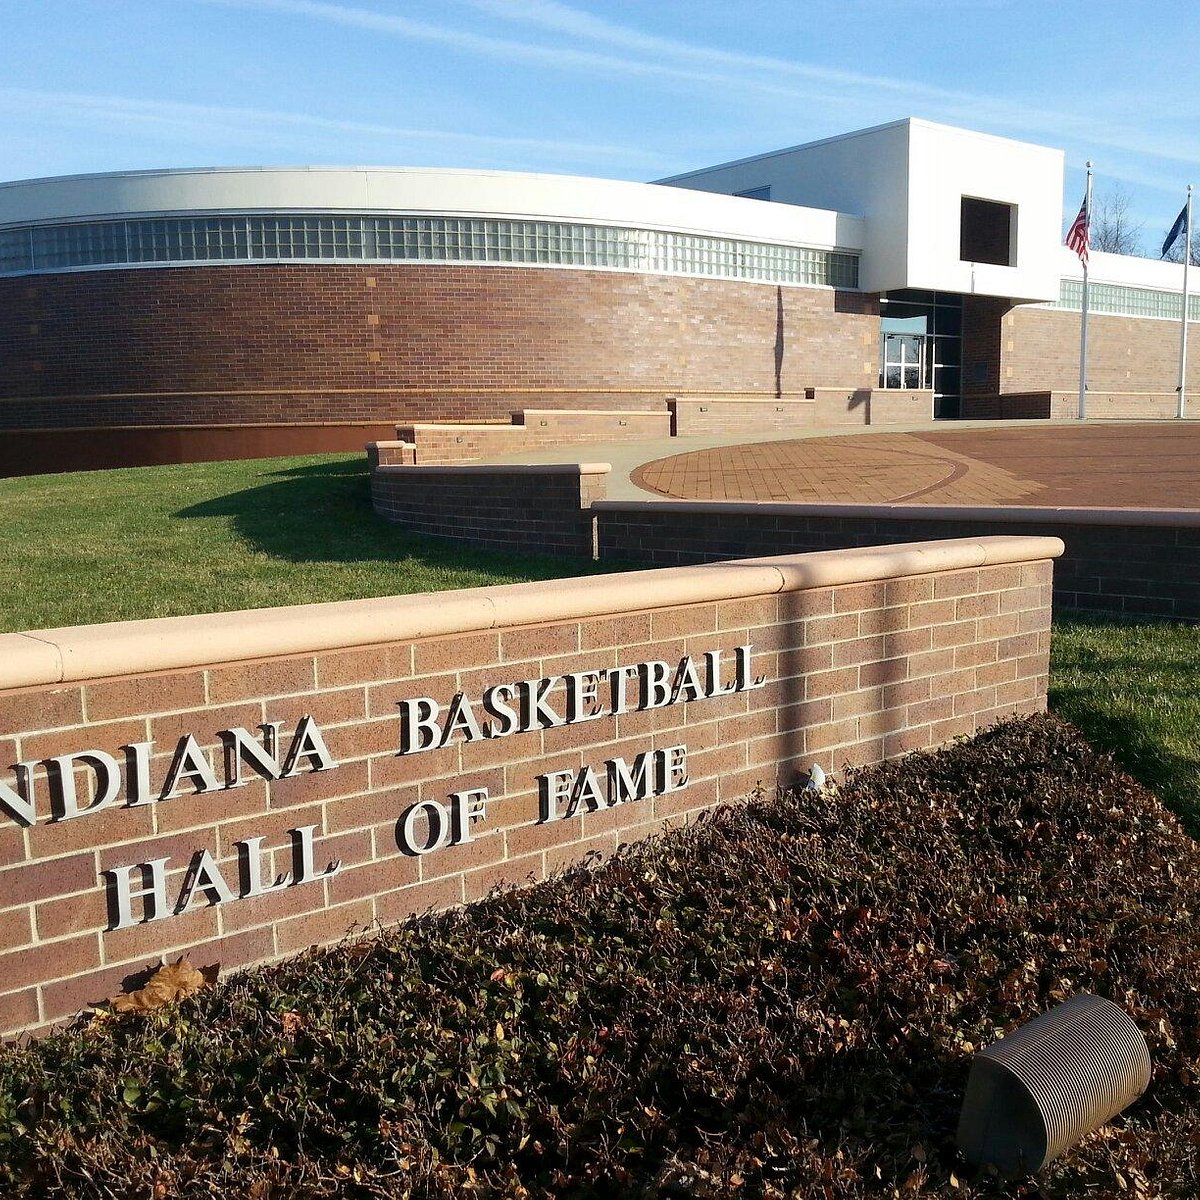 Shop - Indiana Basketball Hall of Fame